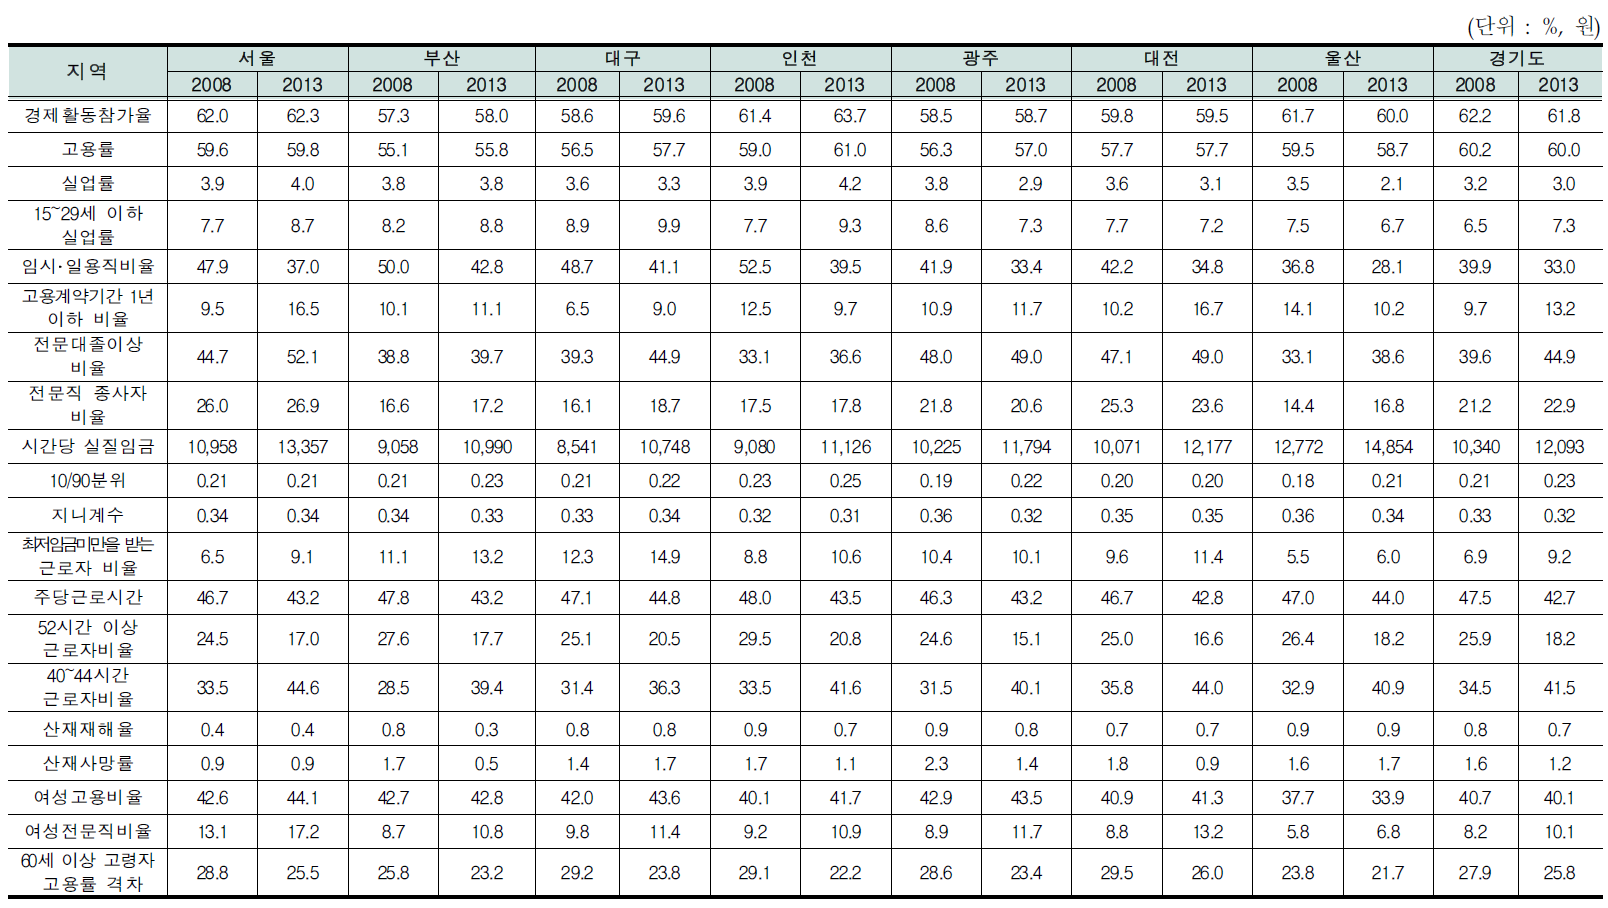 16개 시도별 노동시장 지표별 현황(2008,2013년 기준)